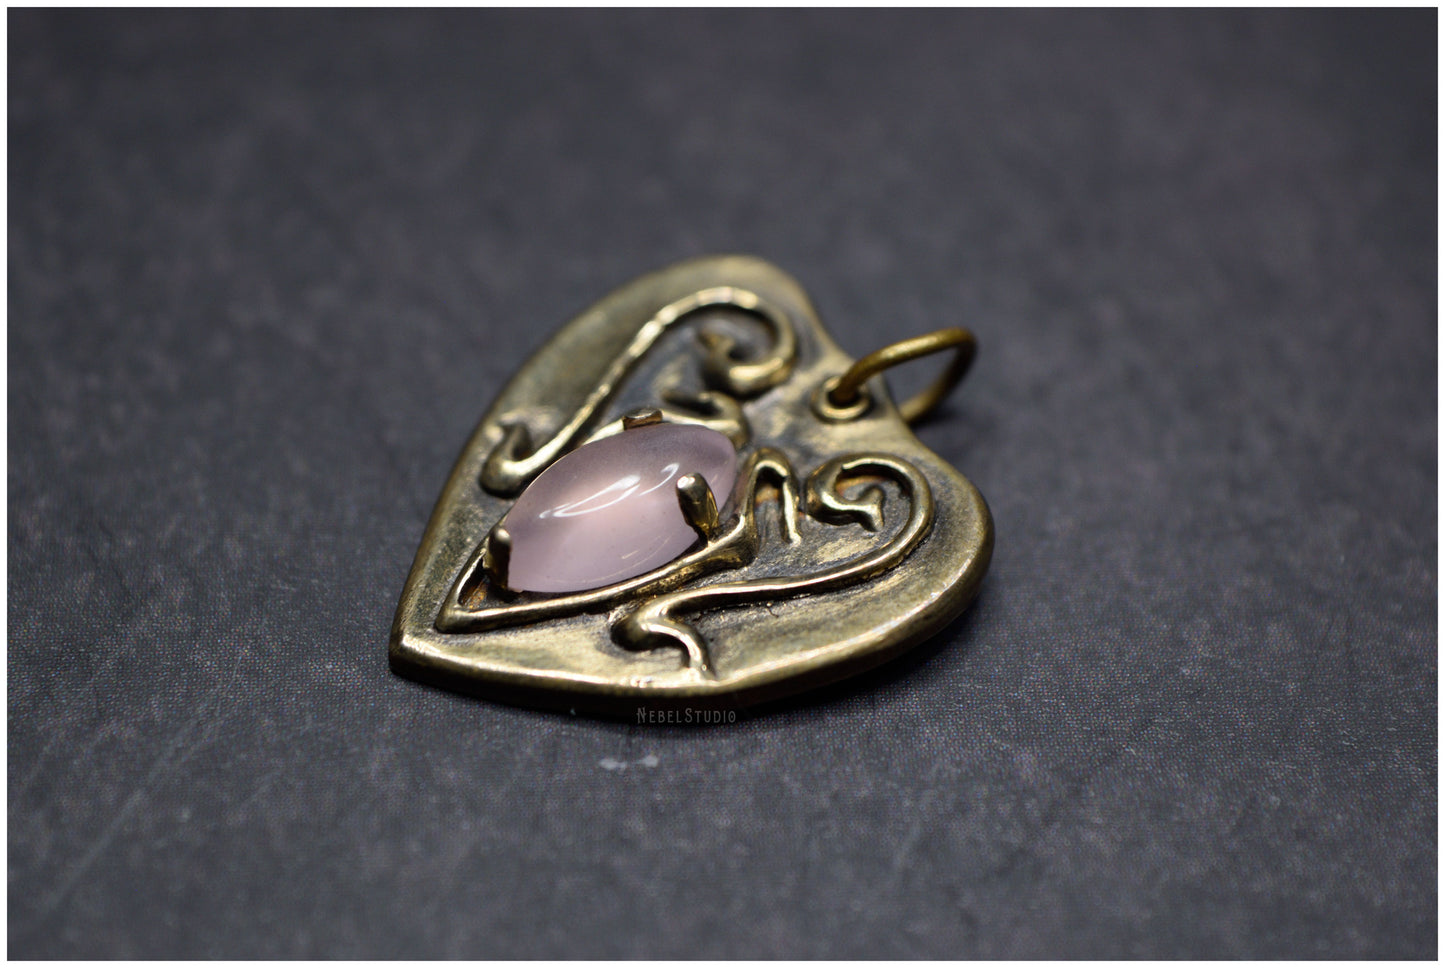 Oferta- Colgante La Séance bronce con calcedonia rosa marquesa tamaño pequeño